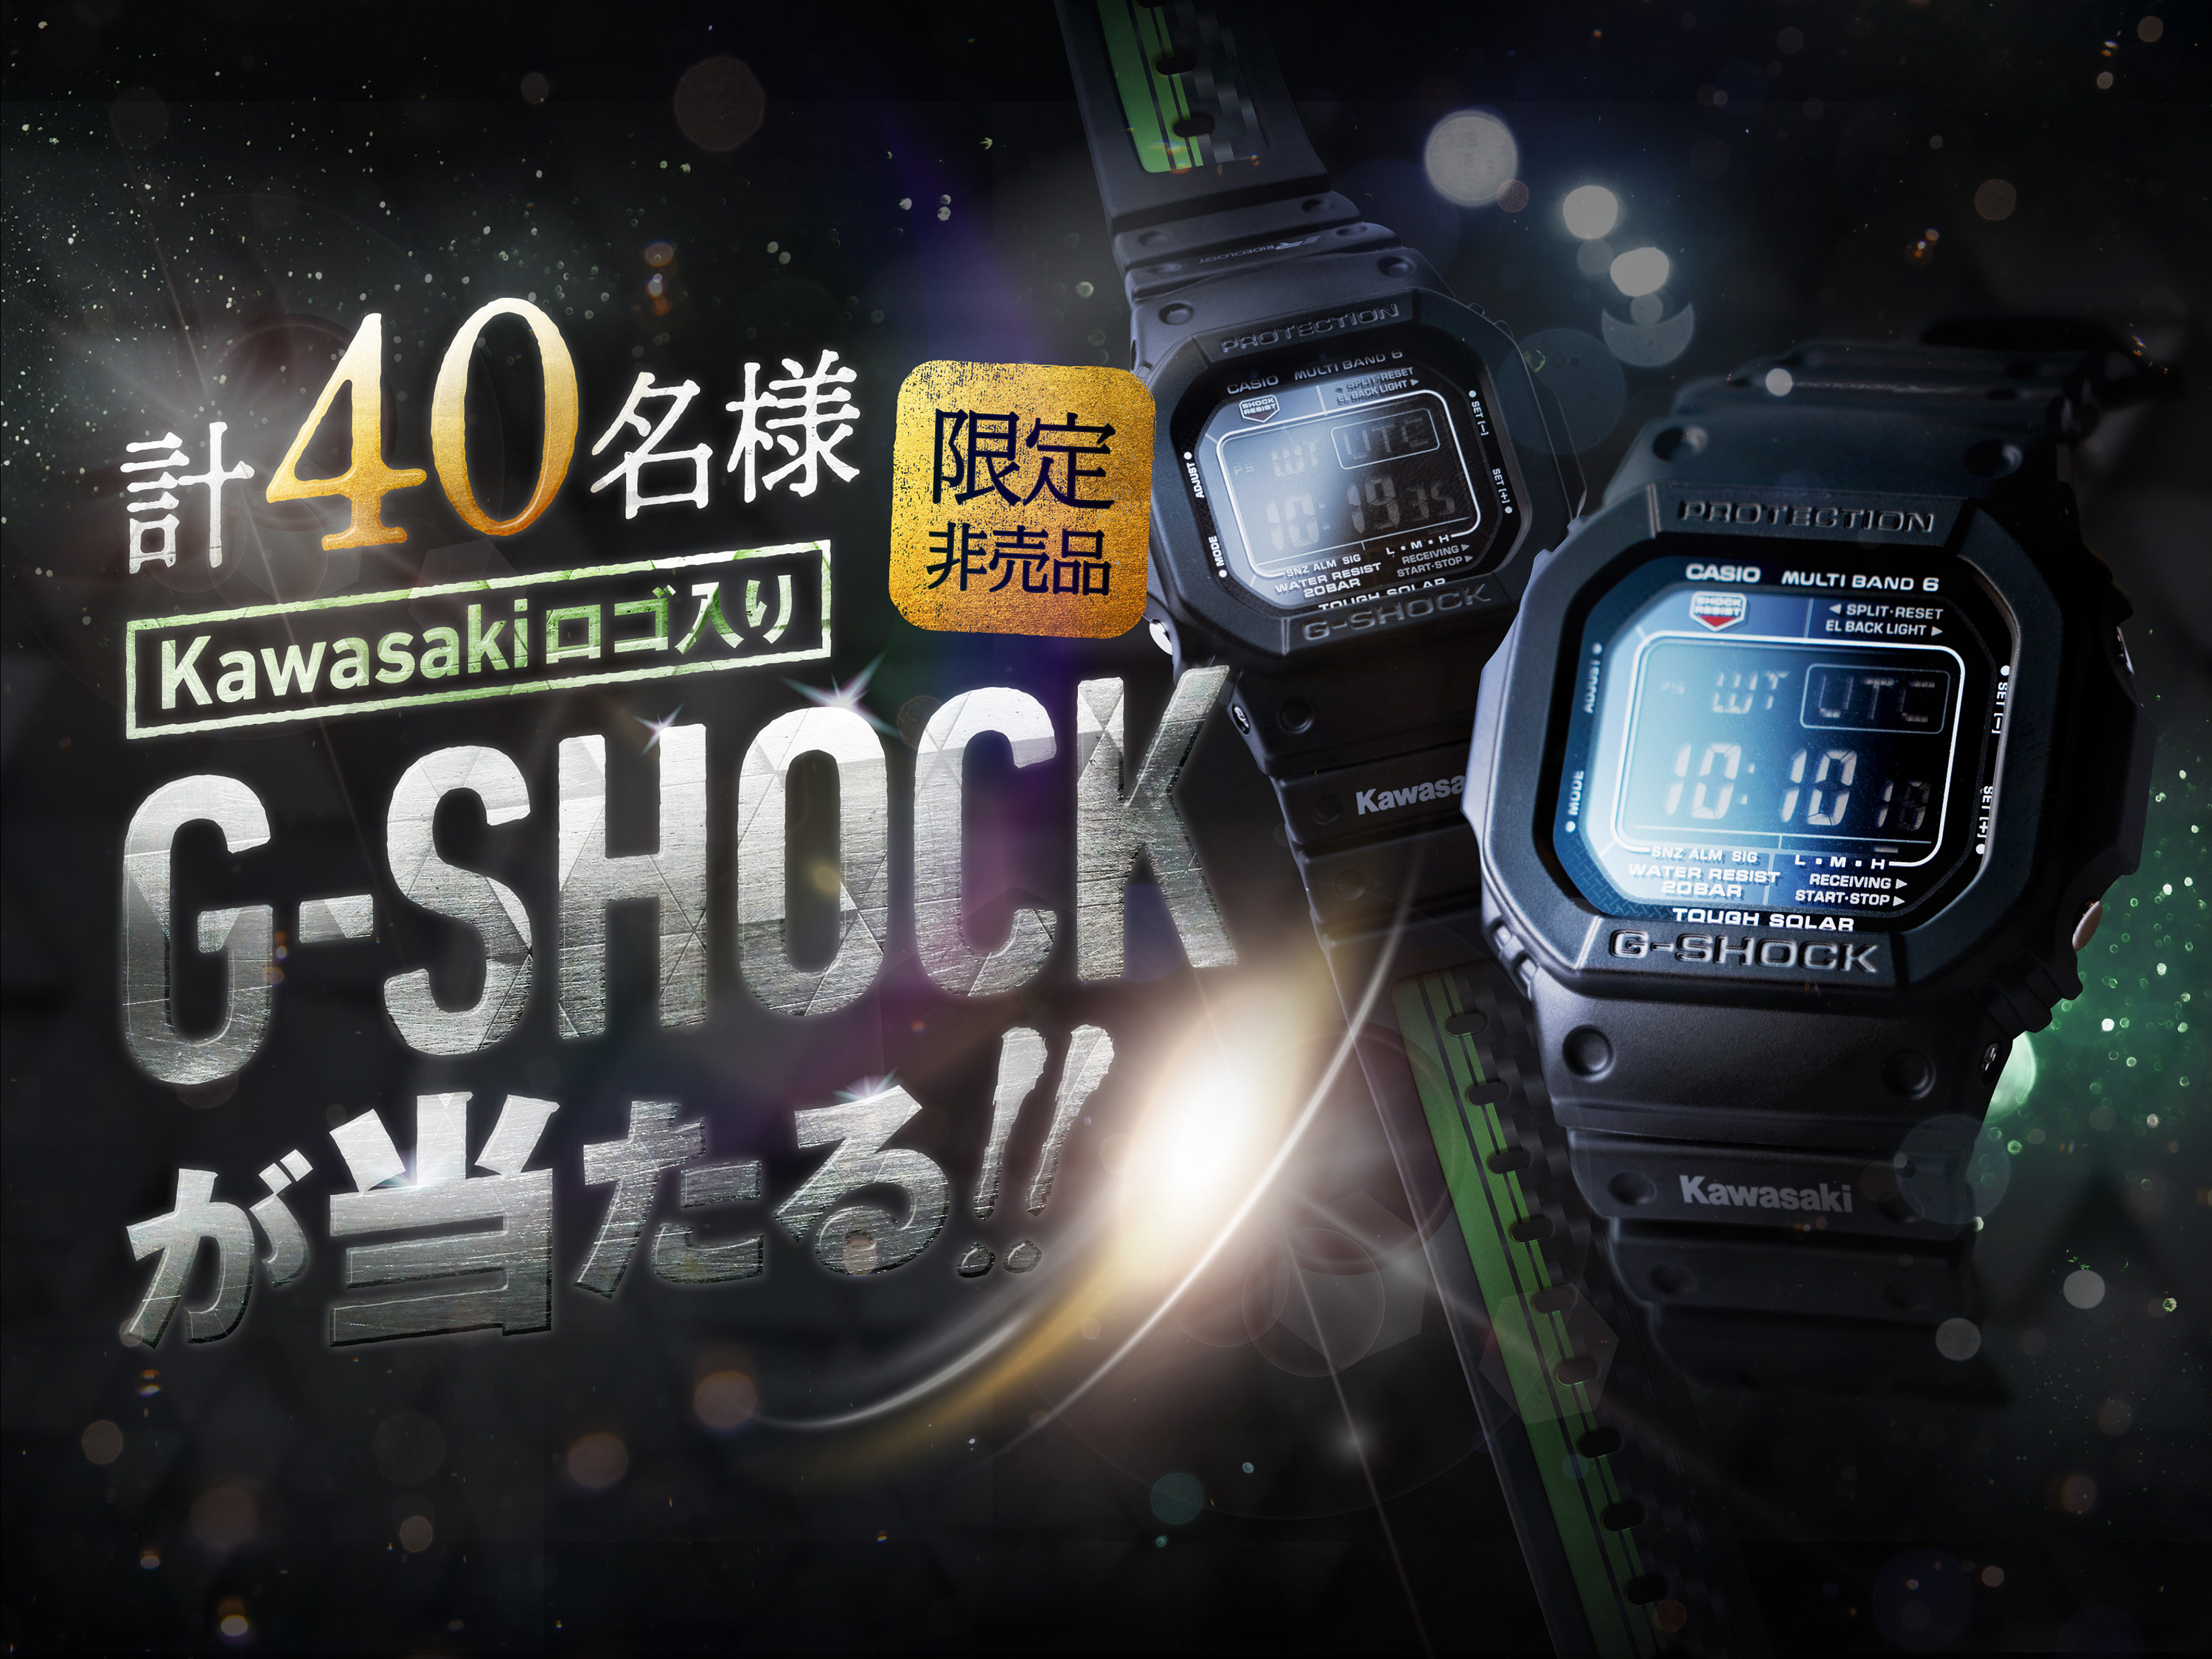 今度はG-SHOCKが当たる!! カワサキのプレゼントキャンペーン第3弾が7月 